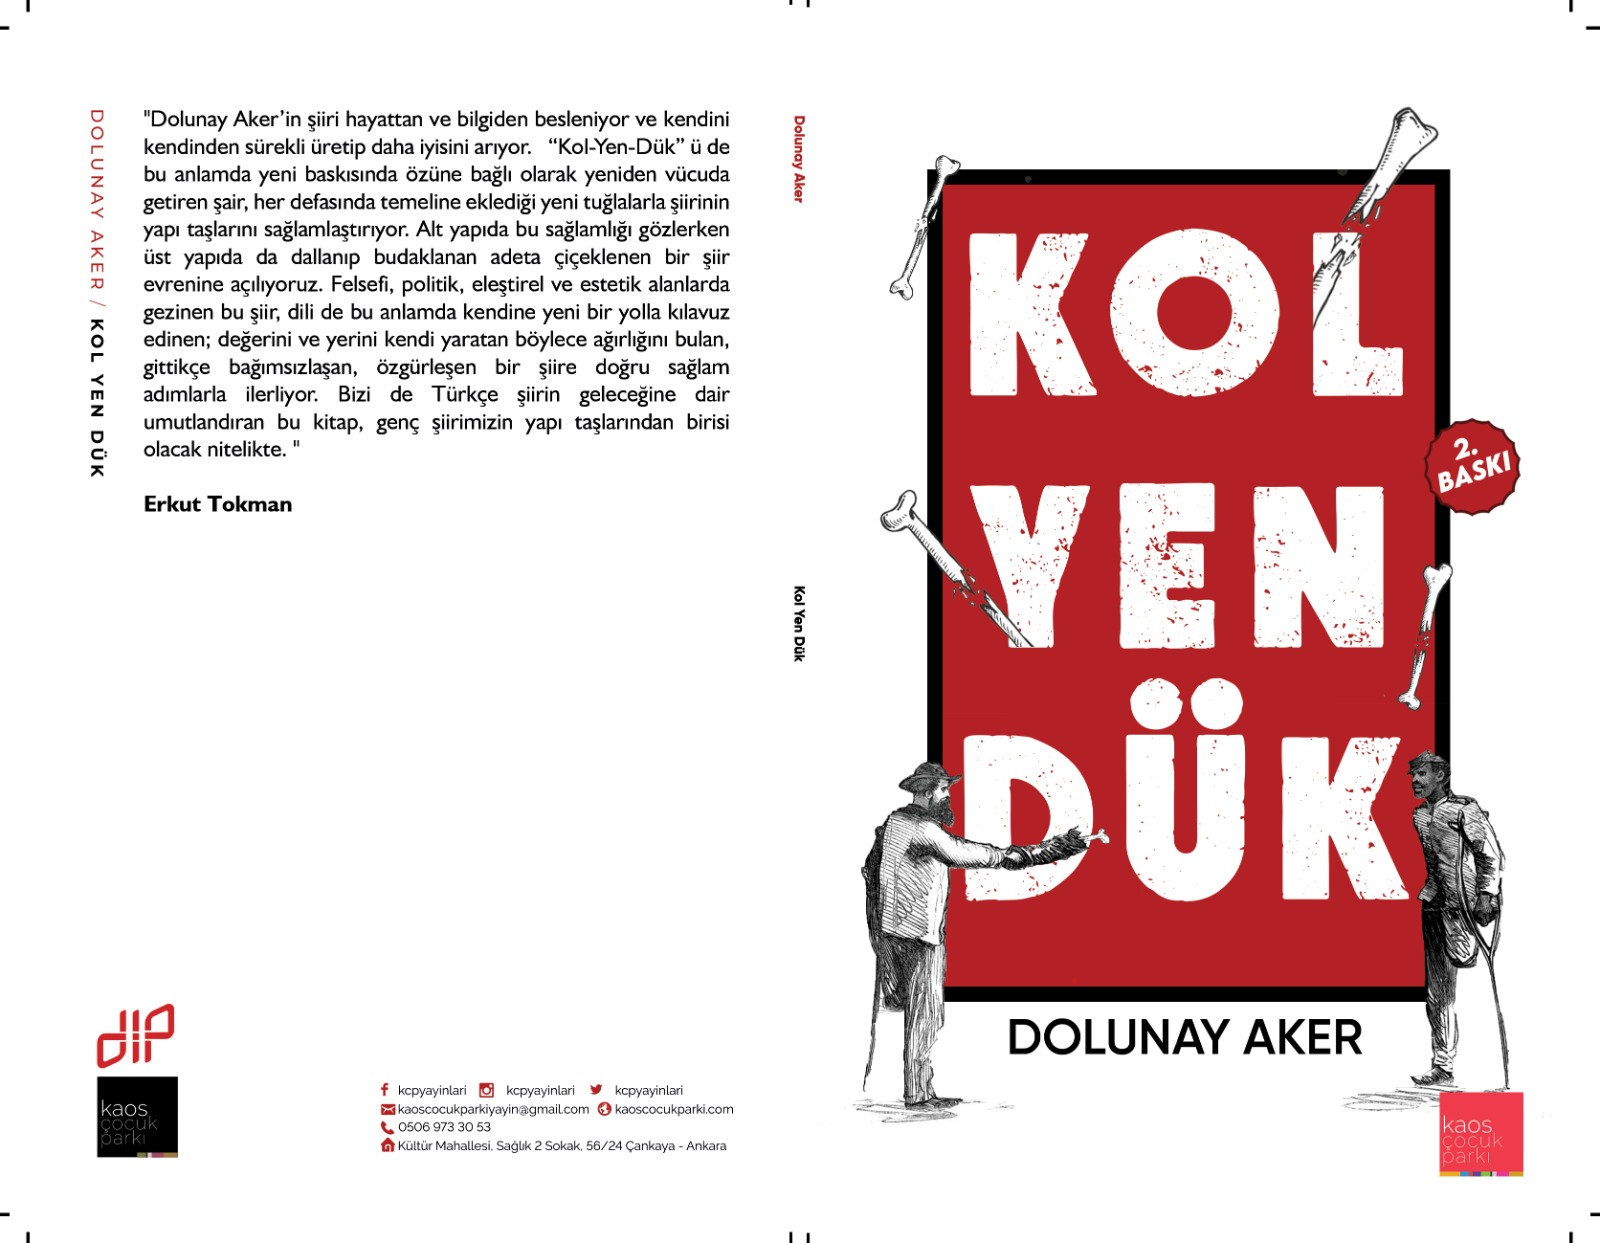 Dolunay Aker'in ikinci şiir kitabı Kol Yen Dük 2. baskısıyla yeniden yayında!